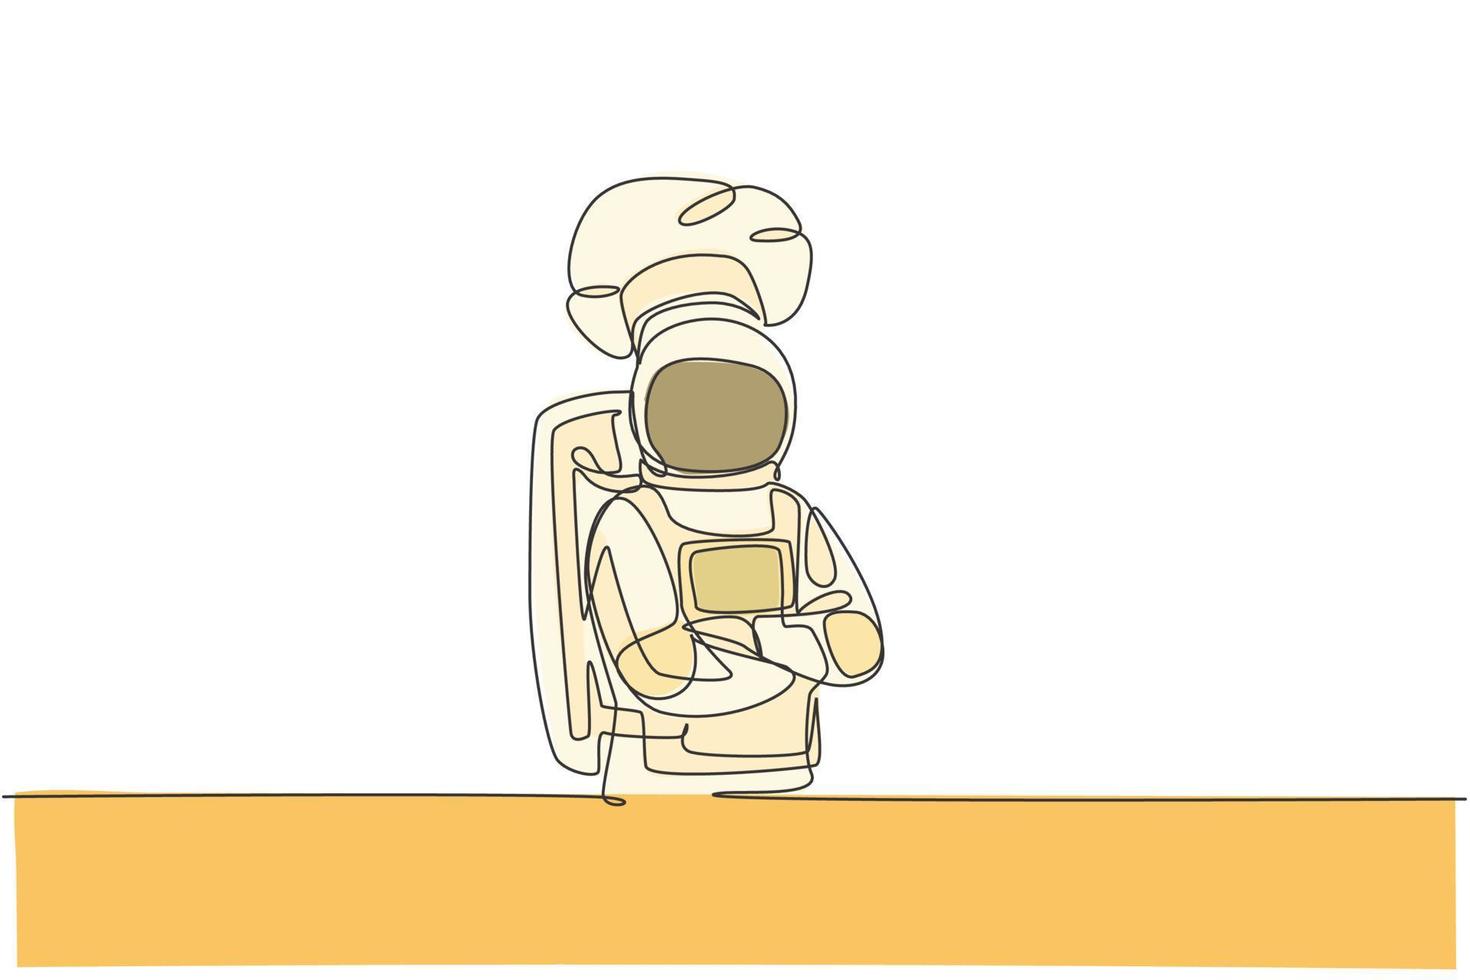 desenho de linha contínua única do jovem chef astronauta cruzando as mãos no peito, pose no café do espaço sideral. conceito de cozinha de restaurante saudável. ilustração em vetor desenho desenho de uma linha na moda